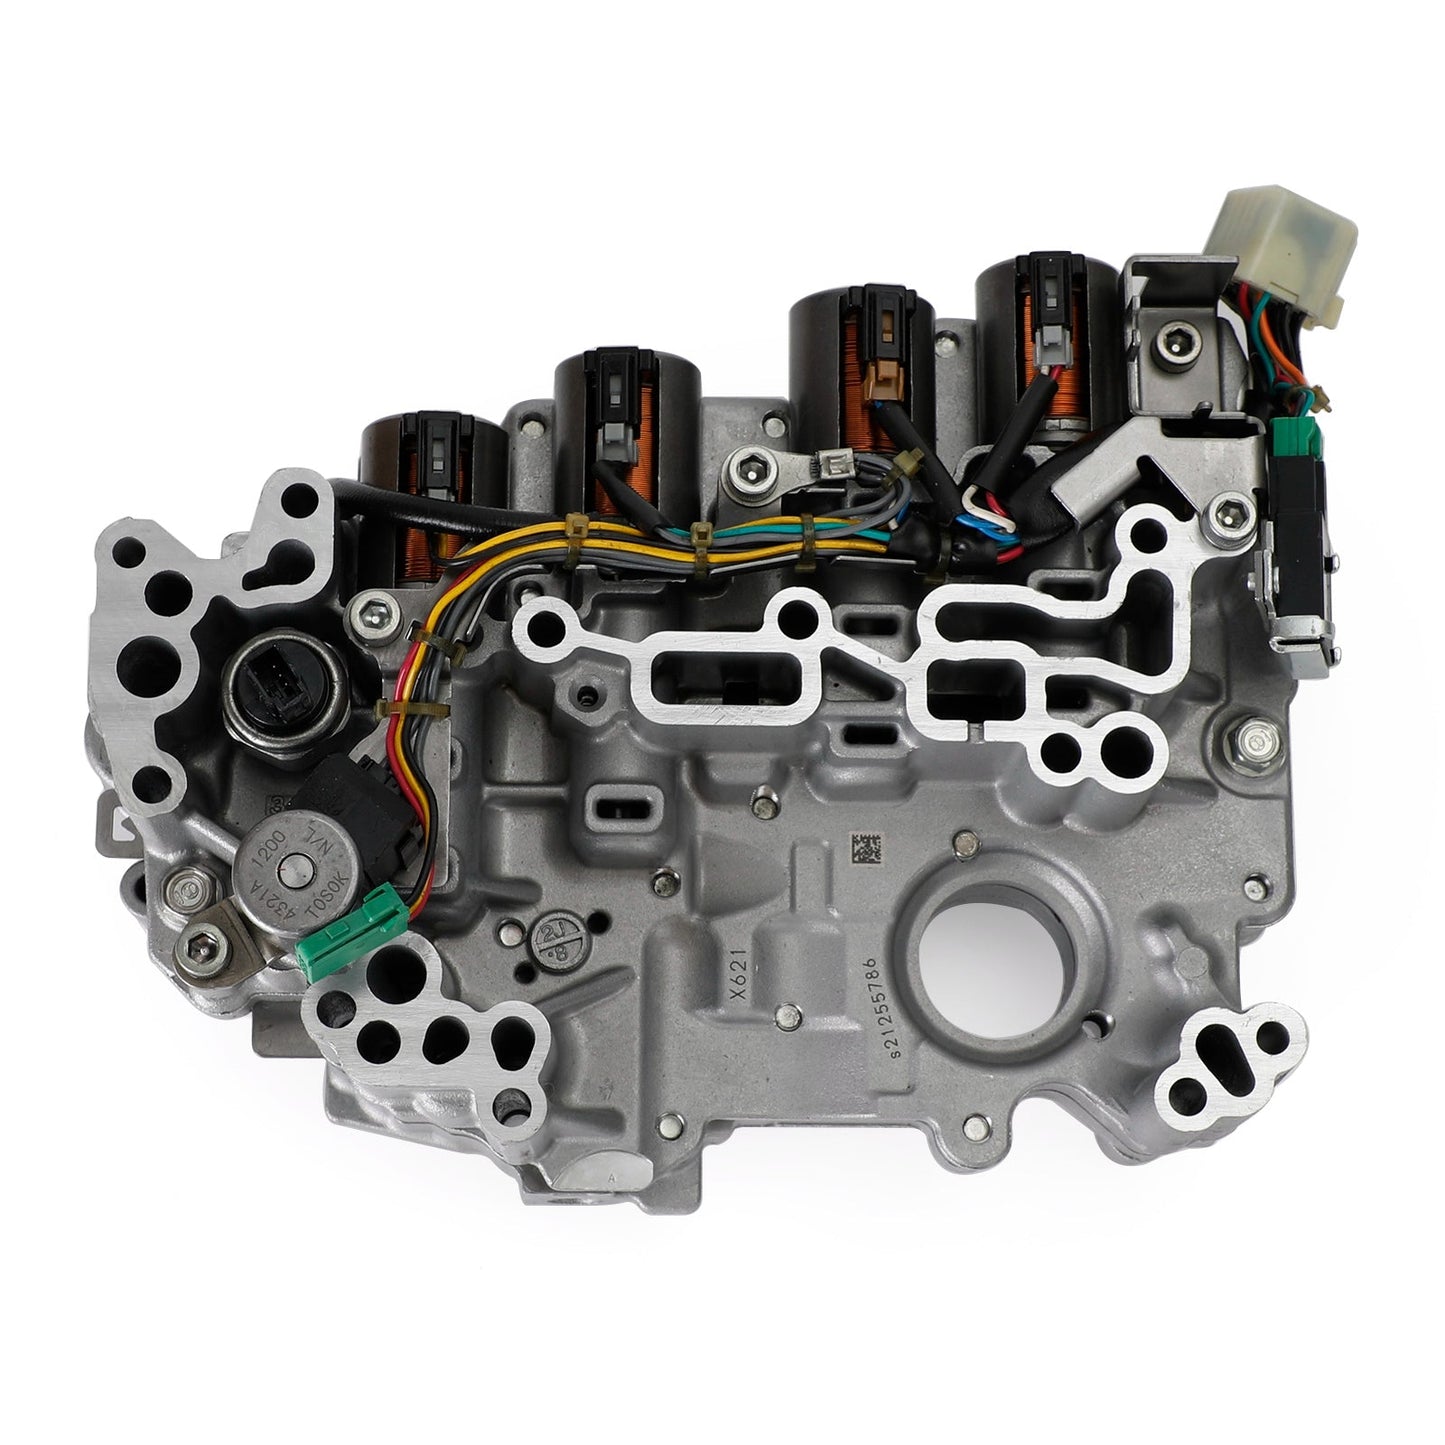 2012-2015 Nissan Versa RE0F11A JF015E CVT Transmission Valve Body